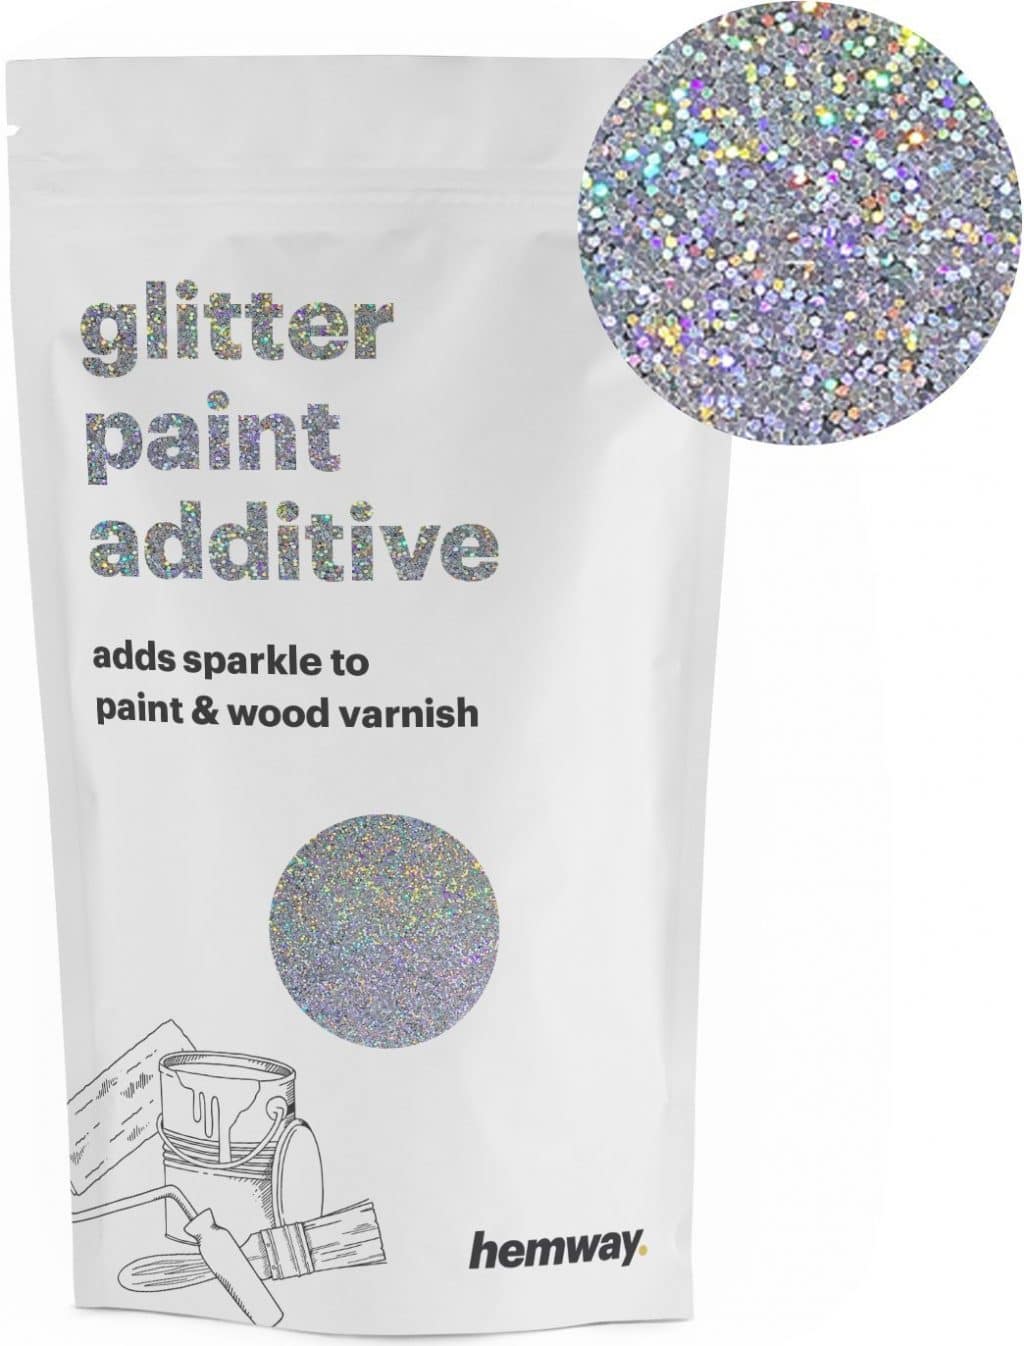 5 Best Uk Glitter Paints Additives Reviews Comparison